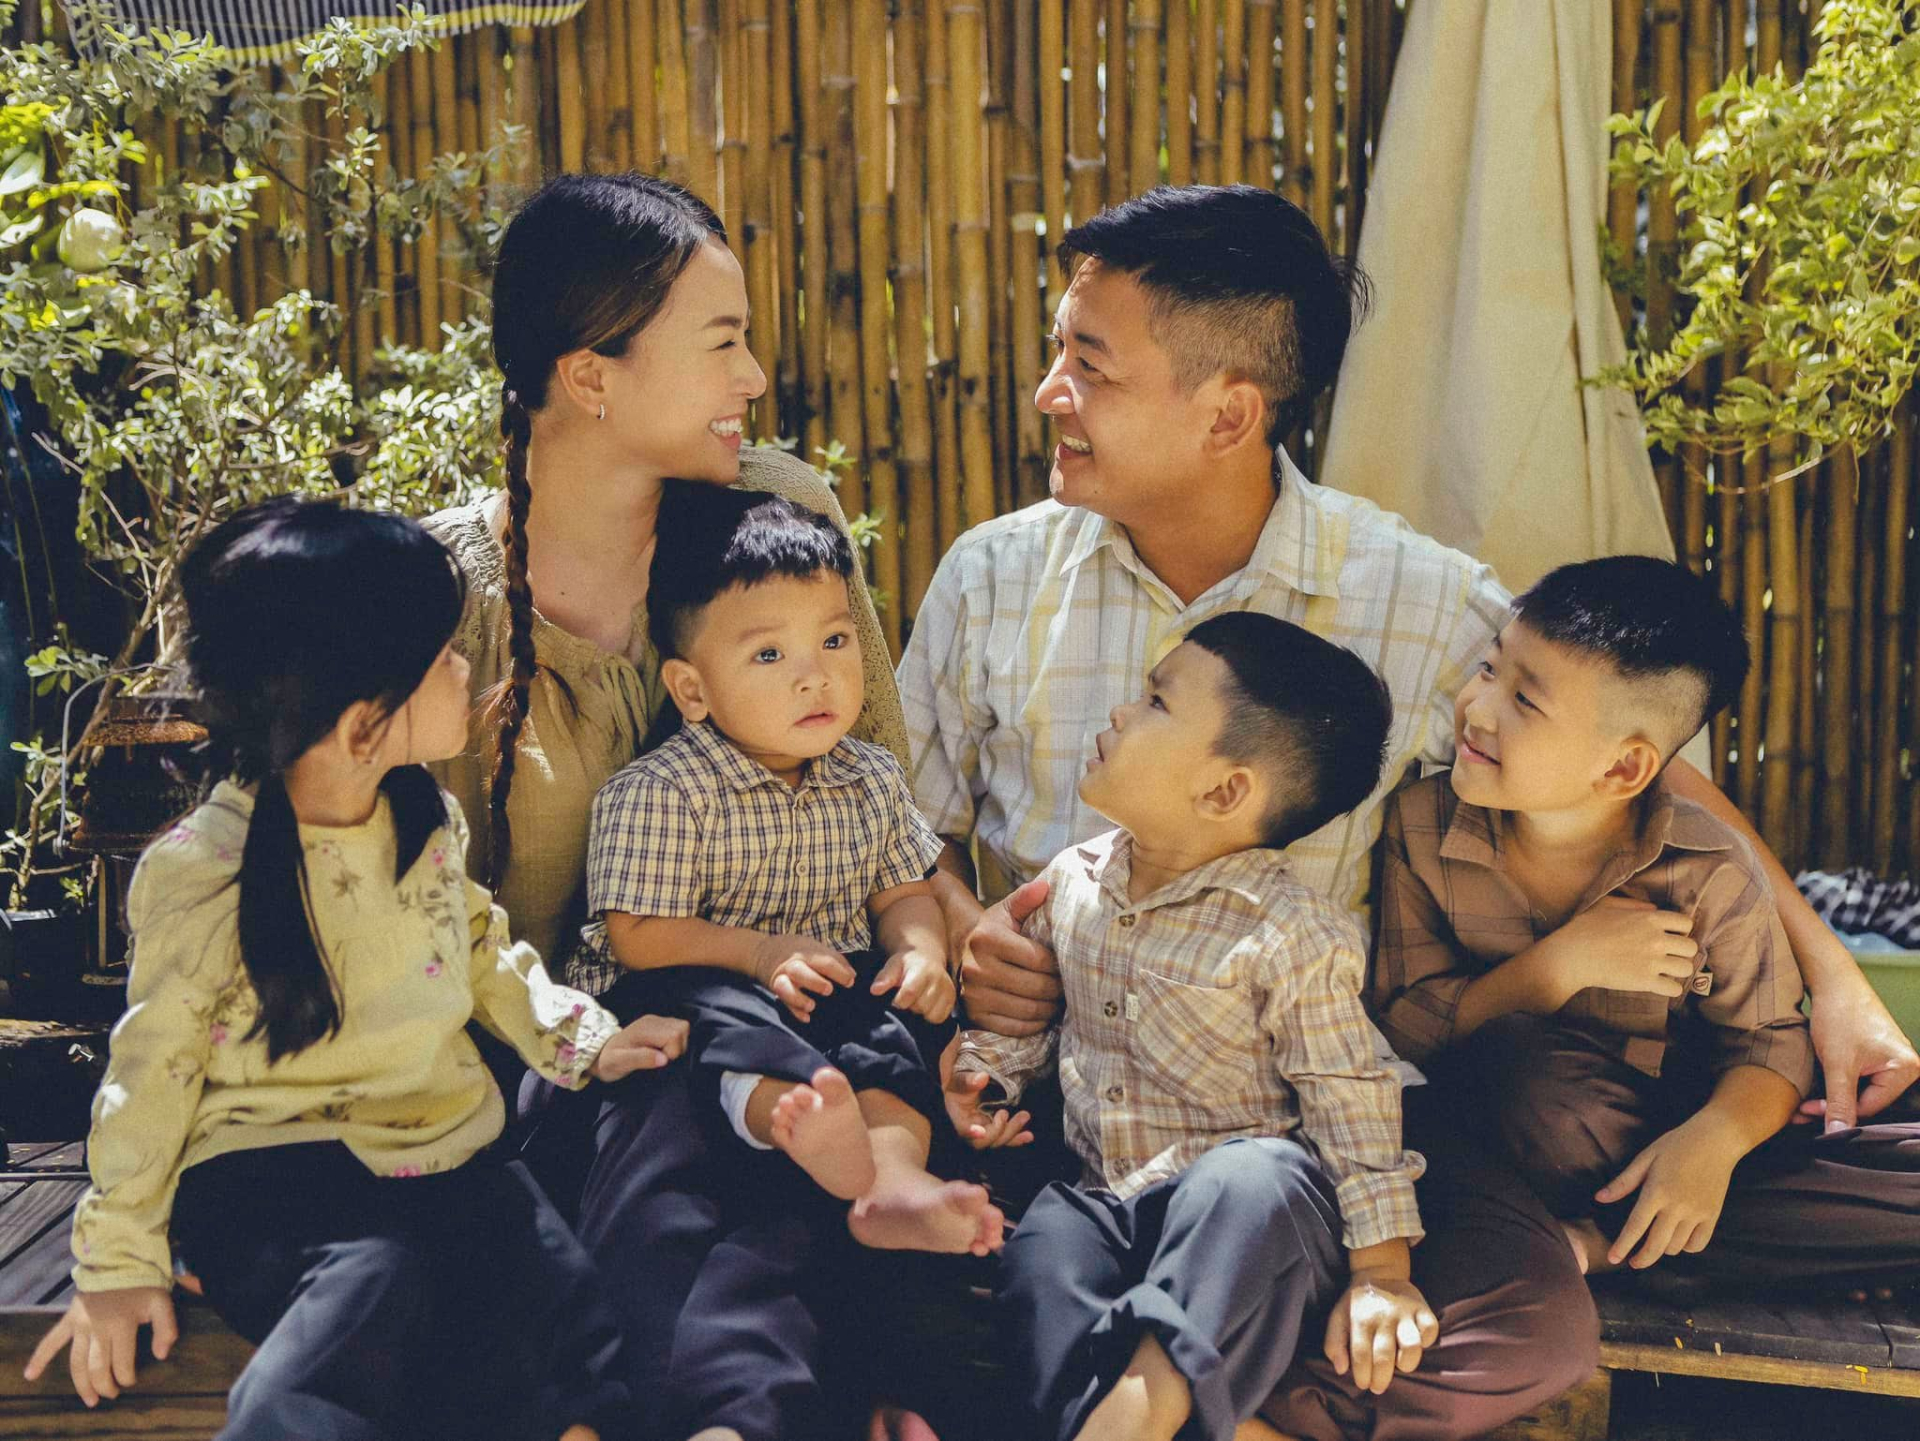 Trước Lucie Nguyễn, diễn viên Hải Băng mang thai con thứ 3 khi mới sinh con thứ 2 được 3 tháng, vết mổ chưa lành - ảnh 3